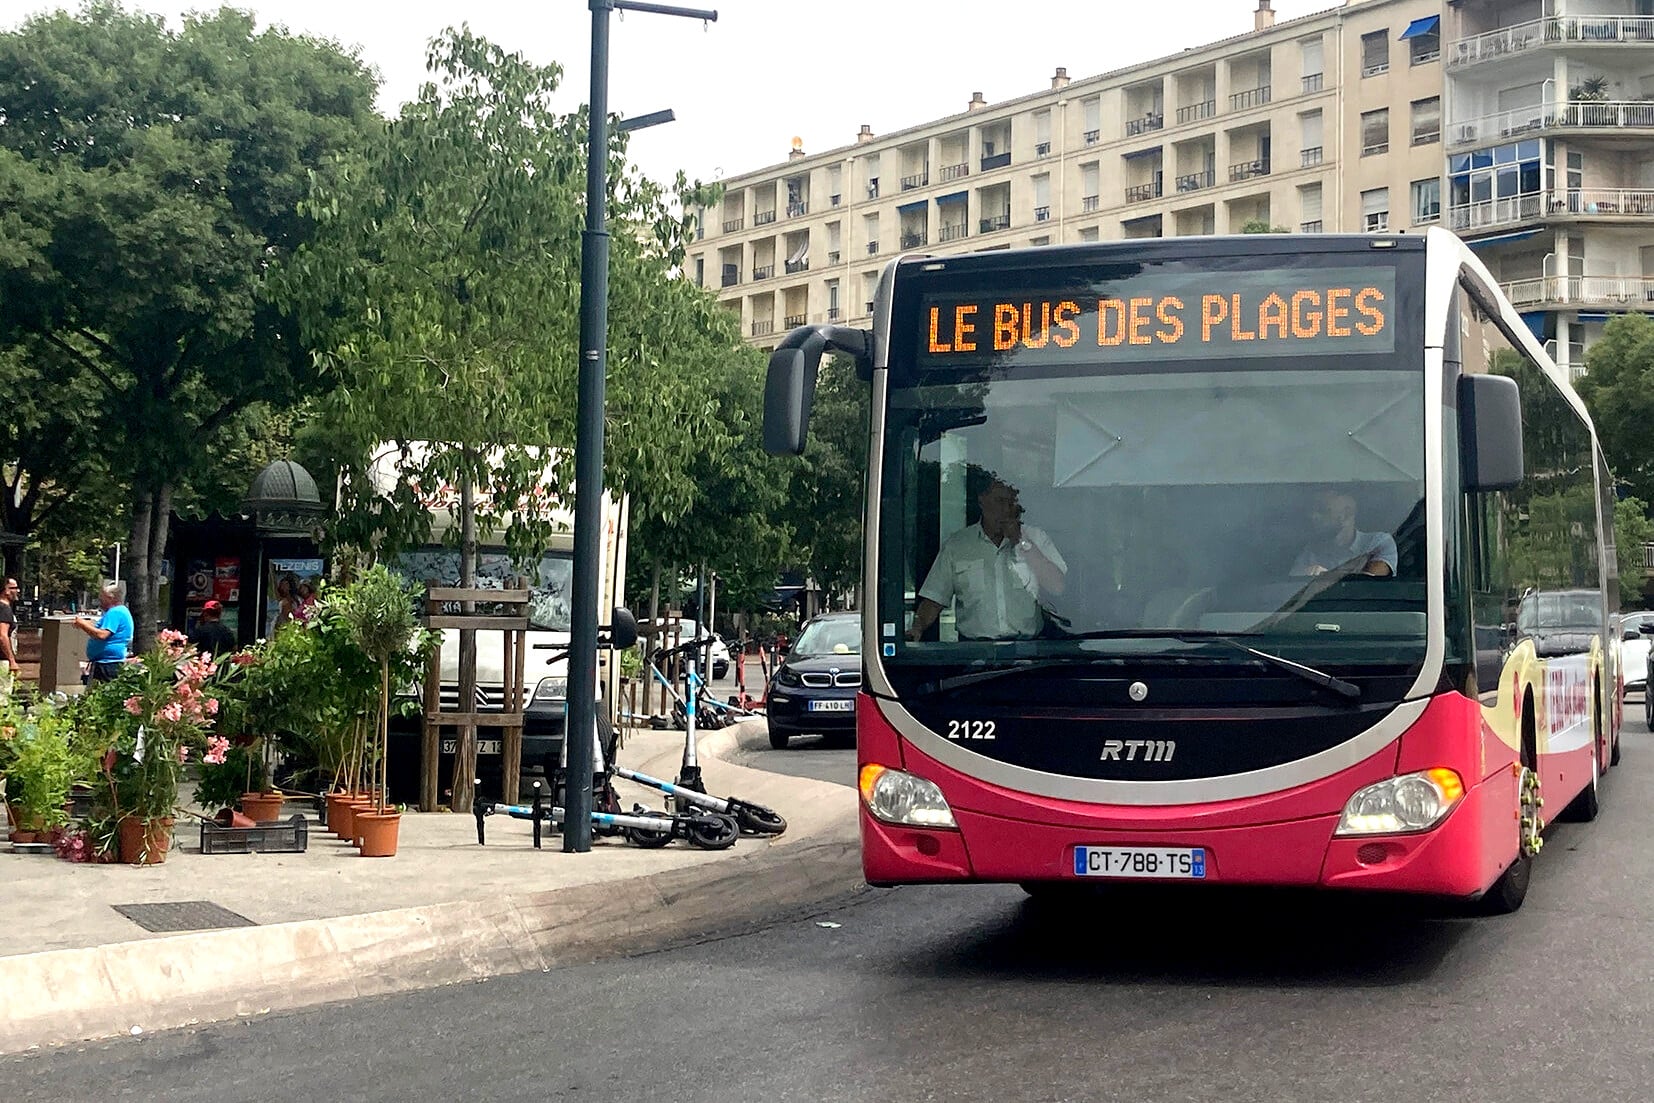 bus des plages, Une nouvelle ligne de bus desservira les plages de Marseille cet été, Made in Marseille